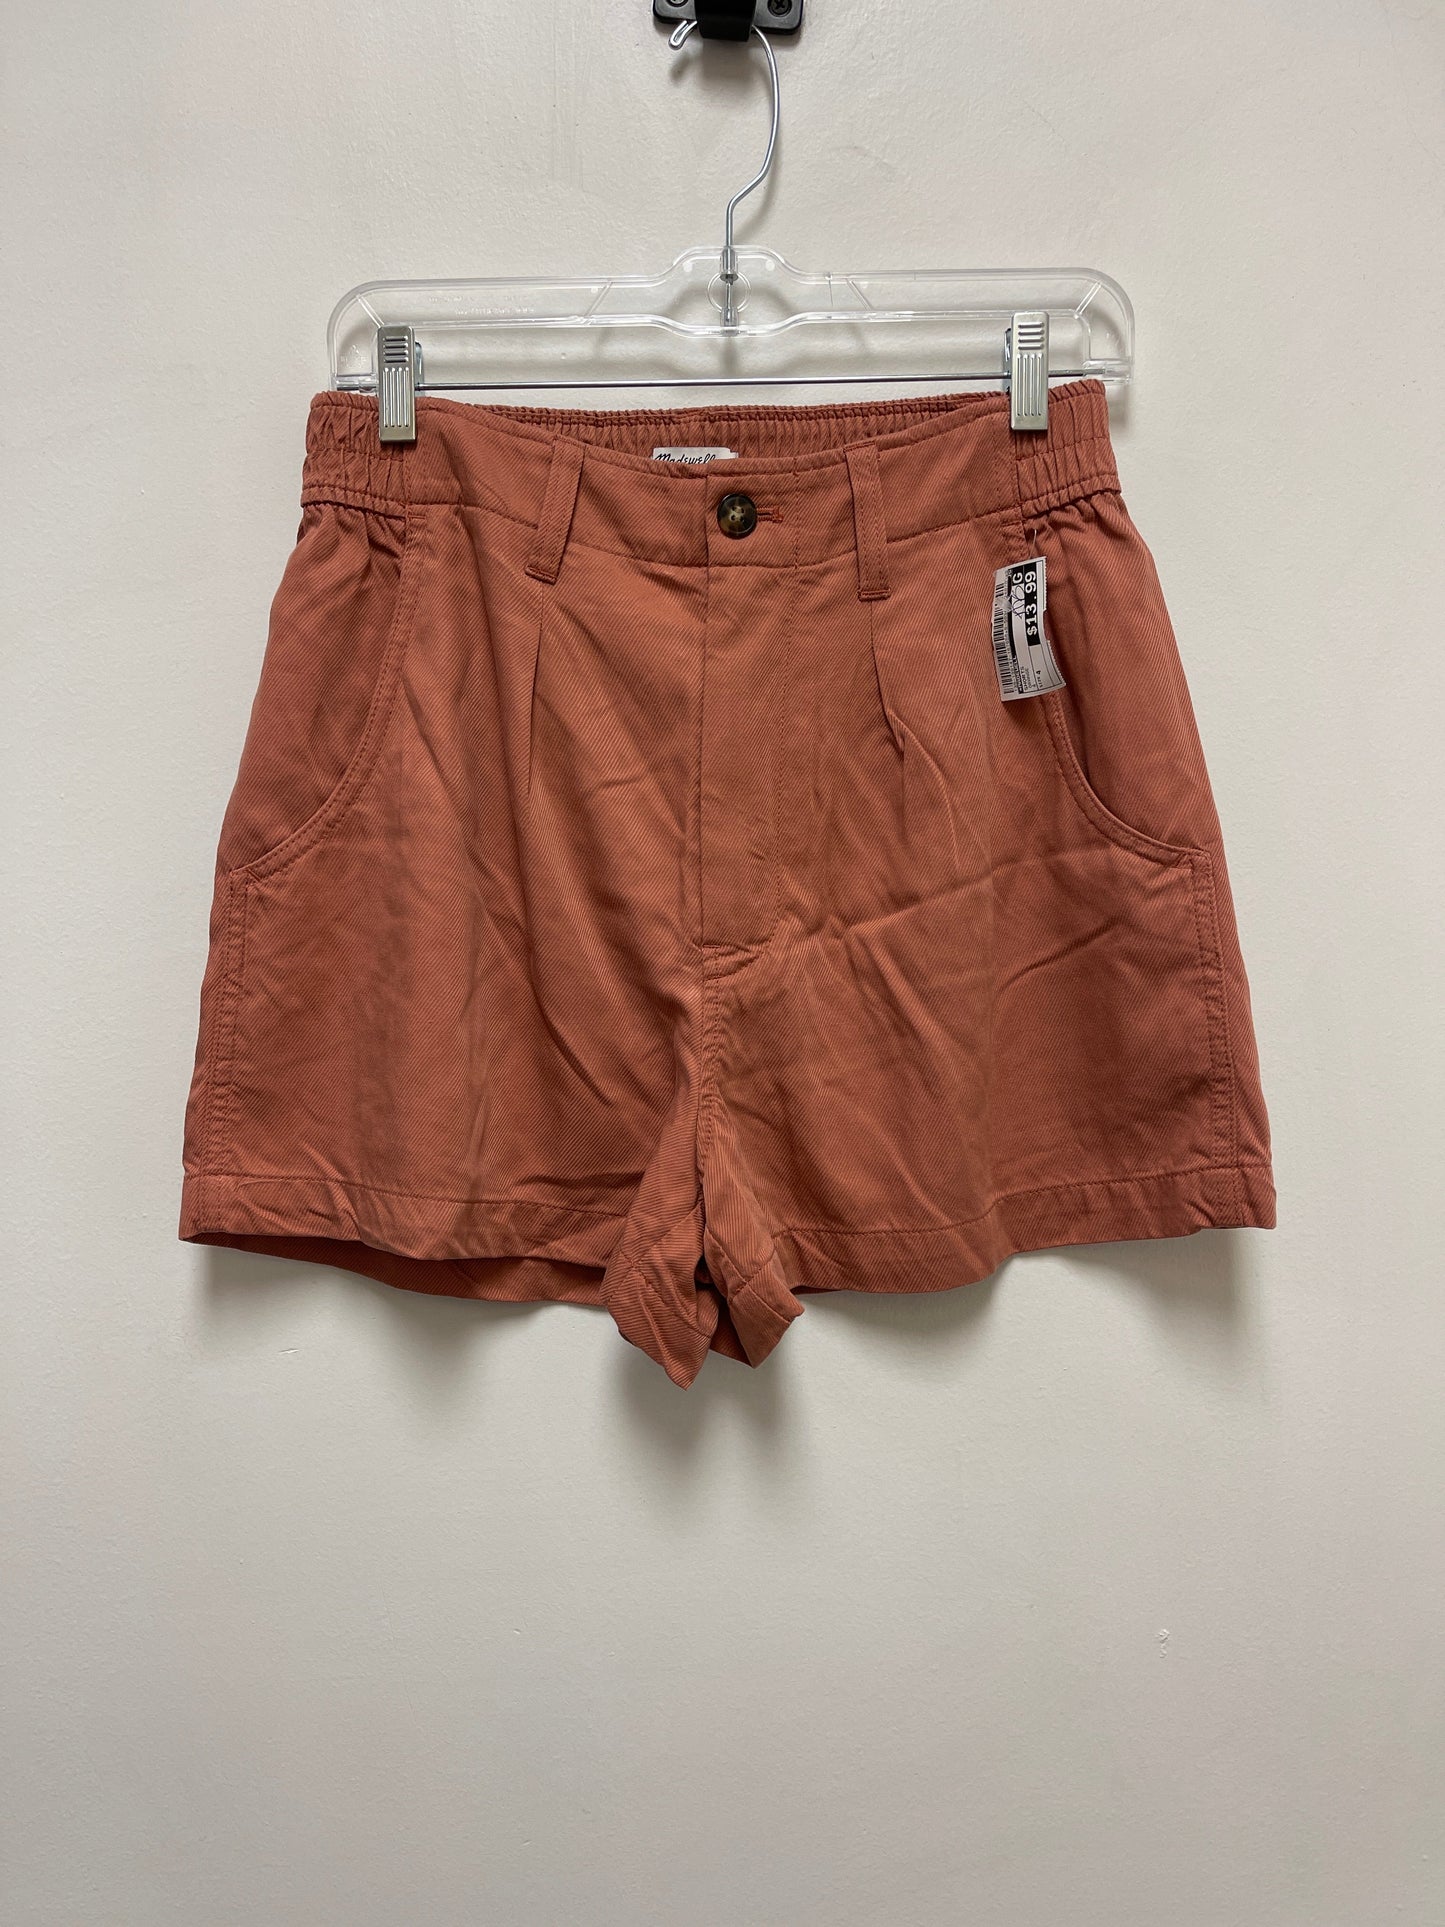 Orange Shorts Madewell, Size 4